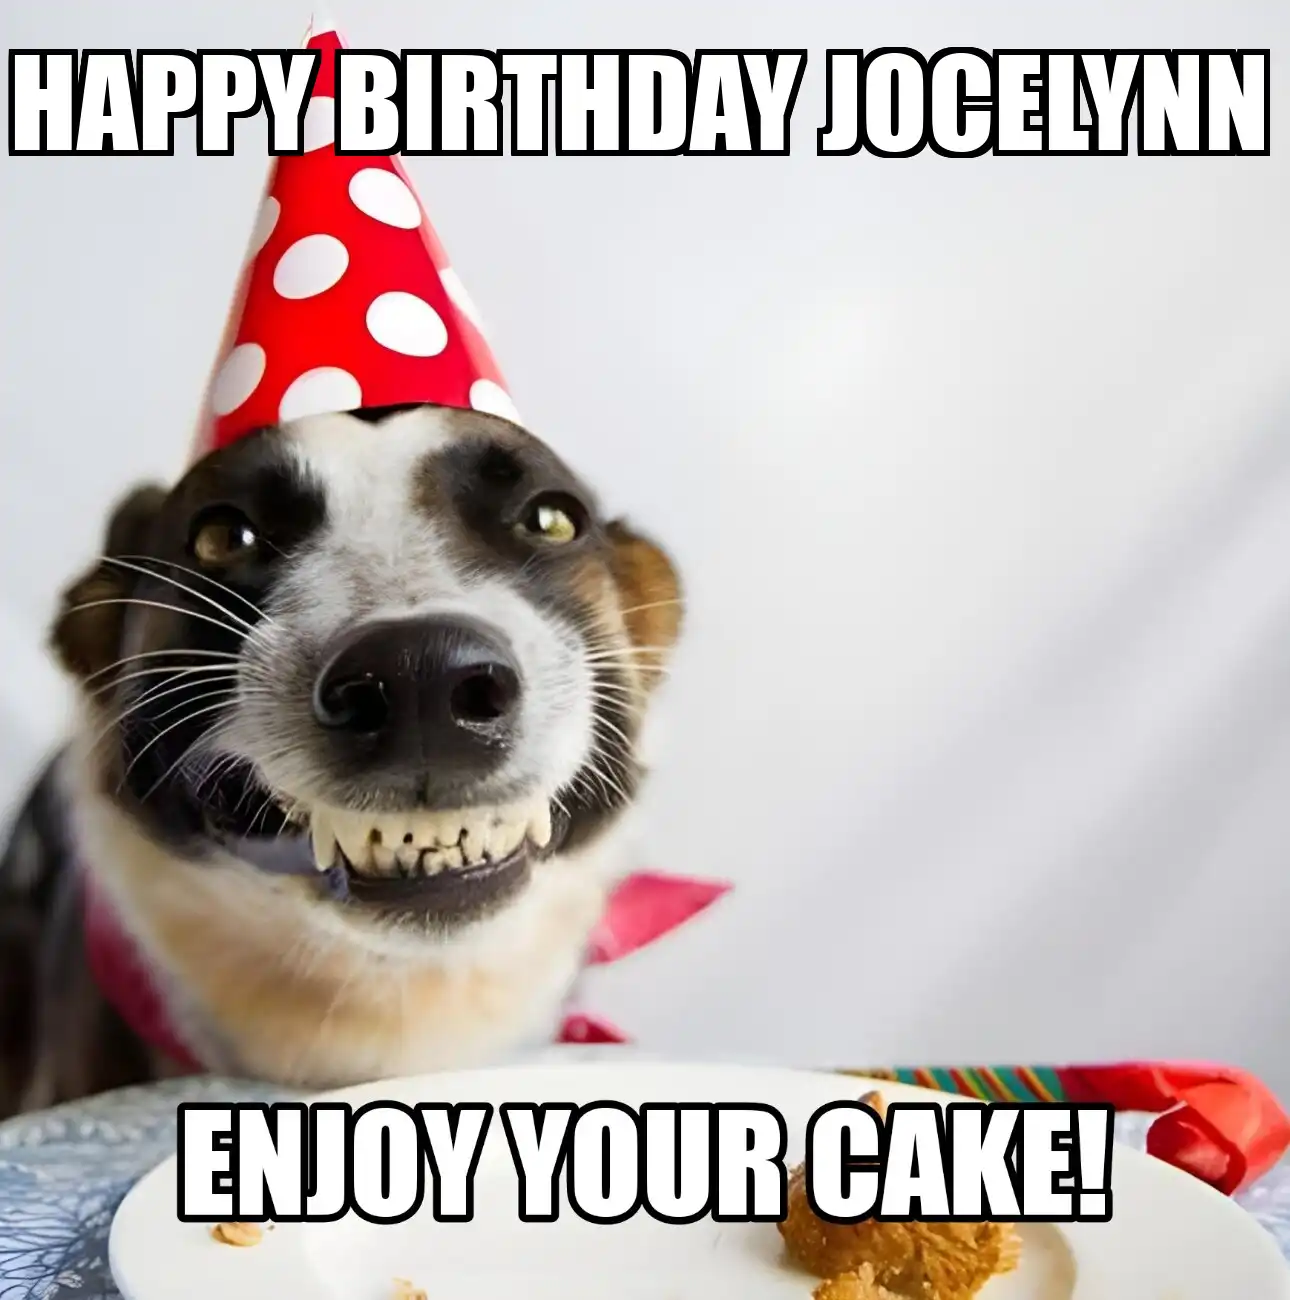 Happy Birthday Jocelynn Enjoy Your Cake Dog Meme